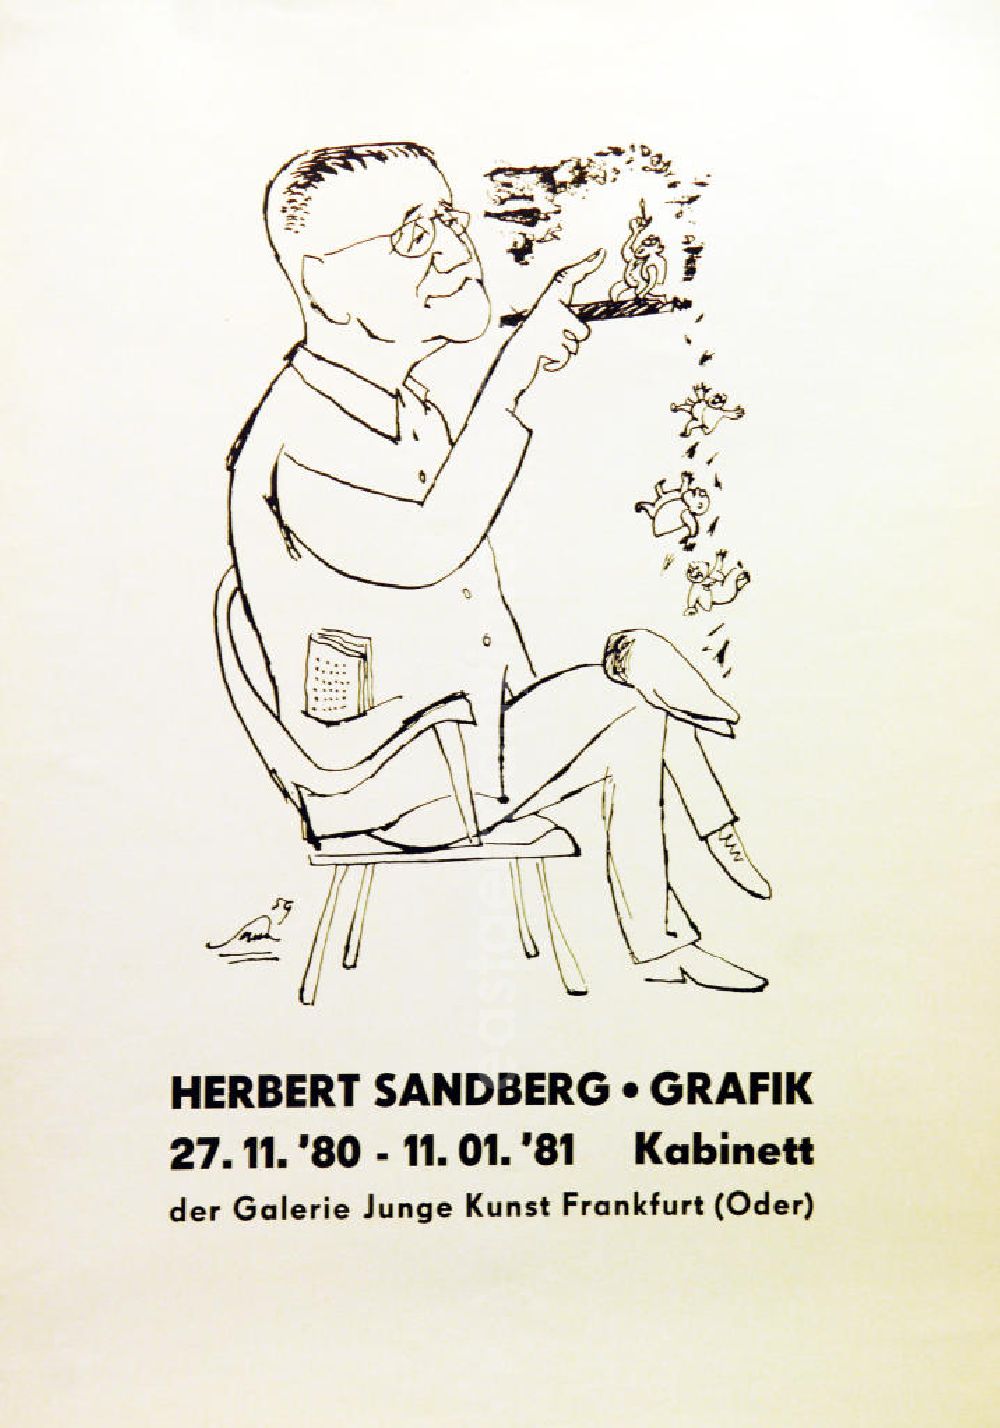 GDR picture archive: Berlin - Plakat der Ausstellung Herbert Sandberg Grafik vom 27.11.1980-11.01.1981 Kabinett der Galerie Junge Kunst Frankfurt (Oder), 42,